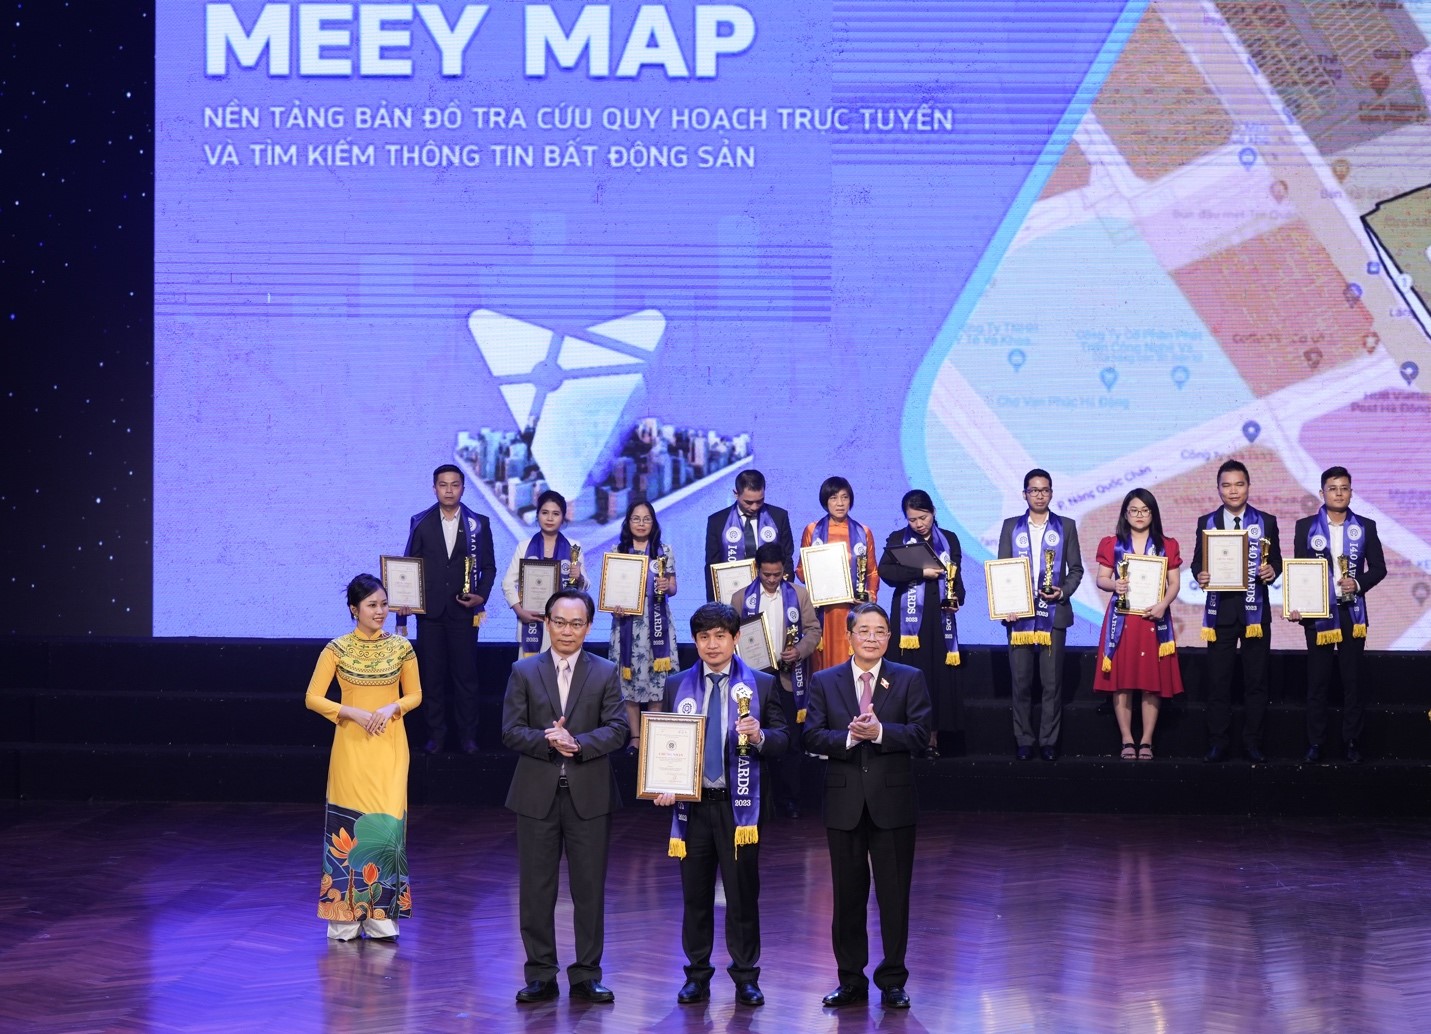 Ủy viên Ban Chấp hành Trung ương Đảng, Phó Chủ tịch Quốc hội Nguyễn Đức Hải và Thứ trưởng Bộ Giáo dục và Đào tạo Hoàng Minh Sơn trao chứng nhận cho Chủ tịch Meey Land Hoàng Mai Chung.